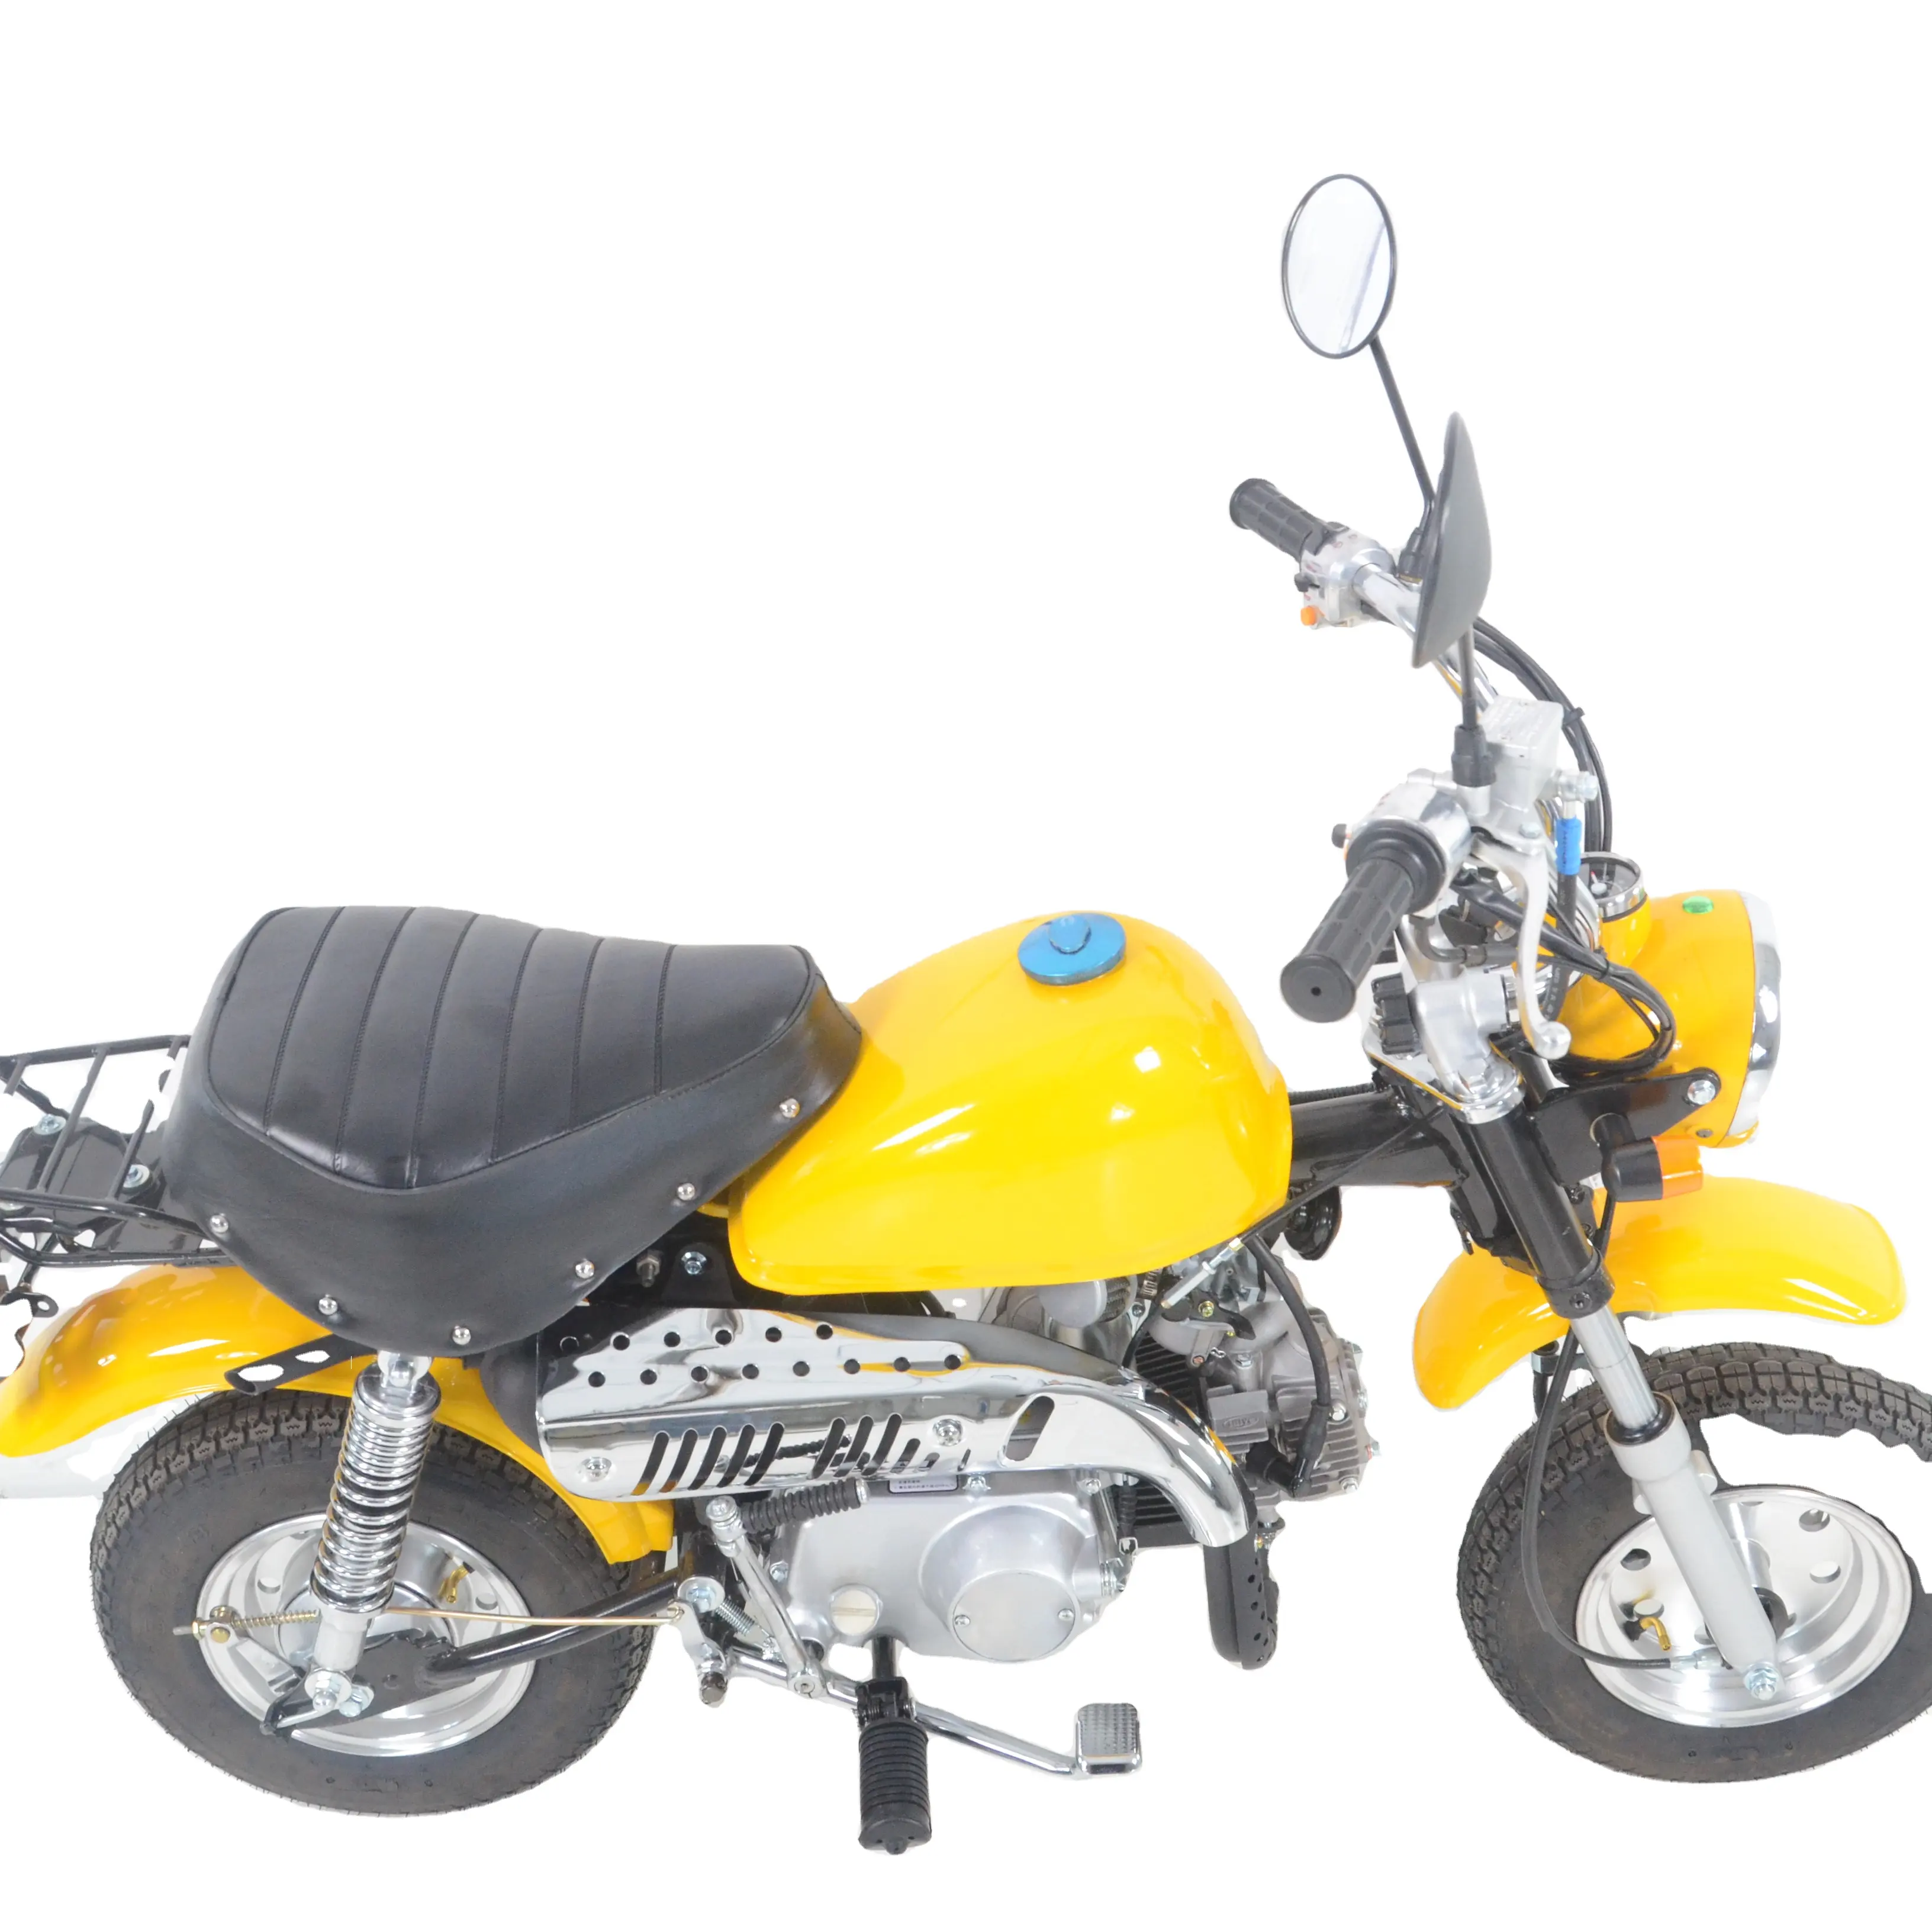 Hot Verkopen Motorfietsen 110cc 125cc Aap Fiets Voor Kinderen